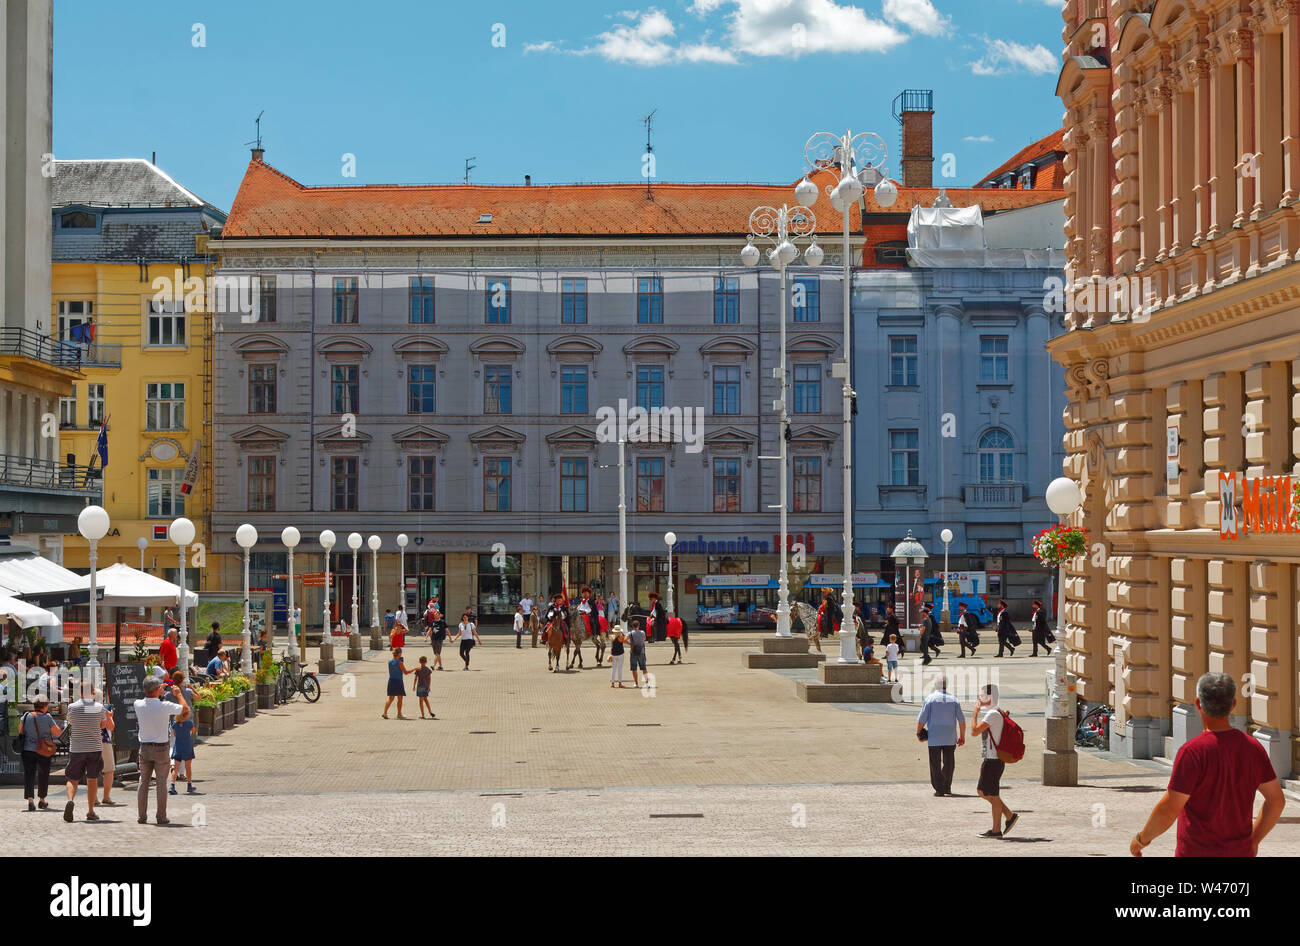 Trg Jelacica Bana; piazza principale; Cravat reggimento uomini a piedi e a cavallo; vecchi edifici, Zagabria, Croazia; Europa; estate, orizzontale Foto Stock